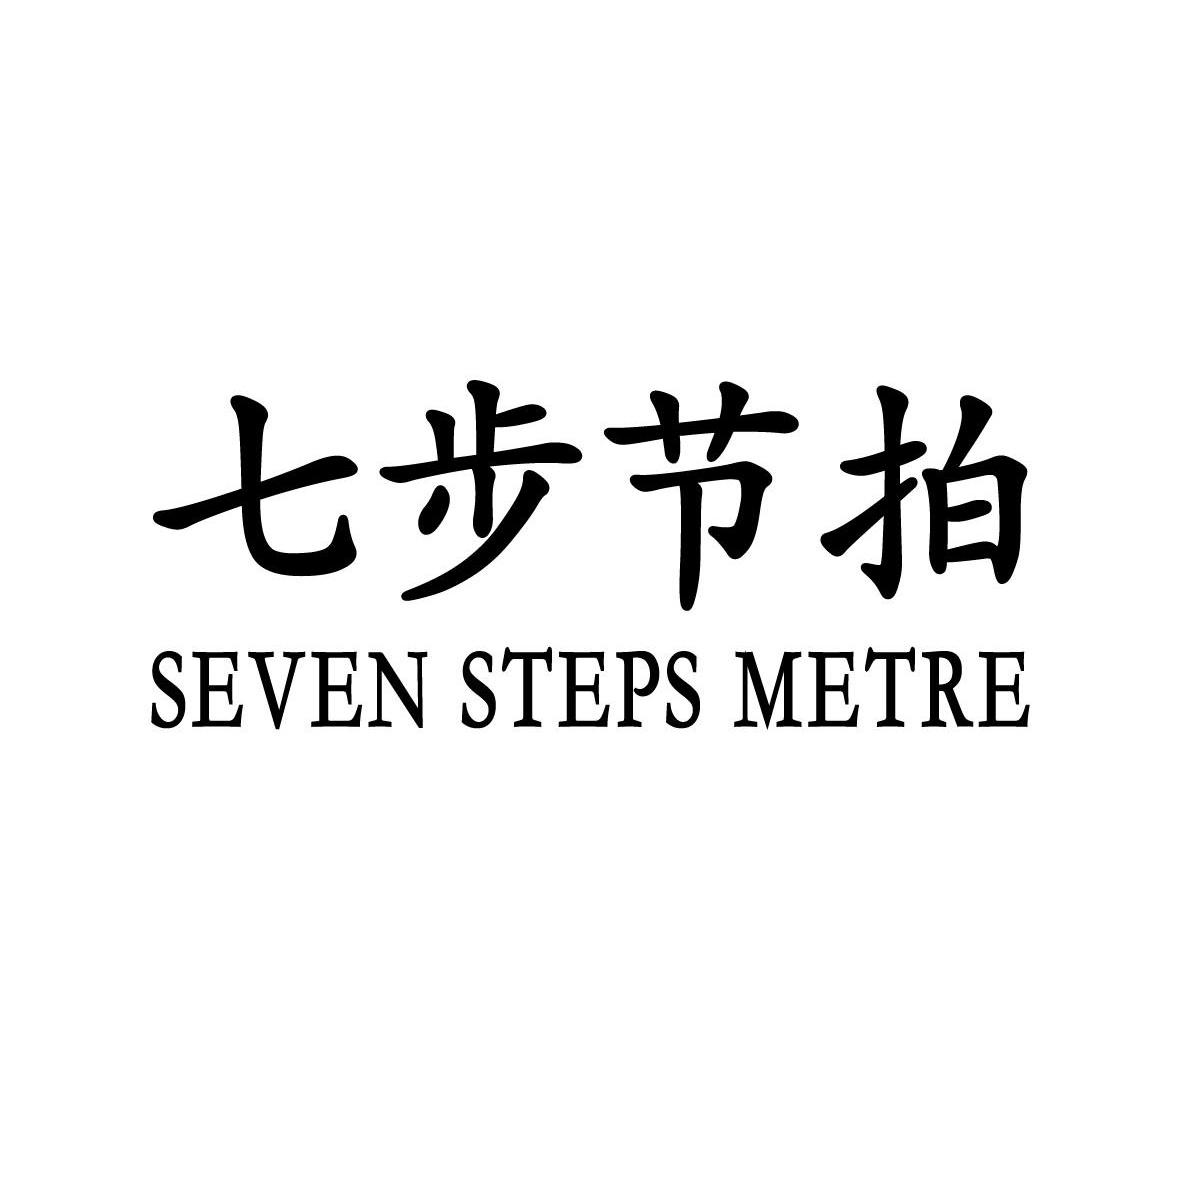 25类-服装鞋帽七步节拍 SEVEN STEPS METRE商标转让